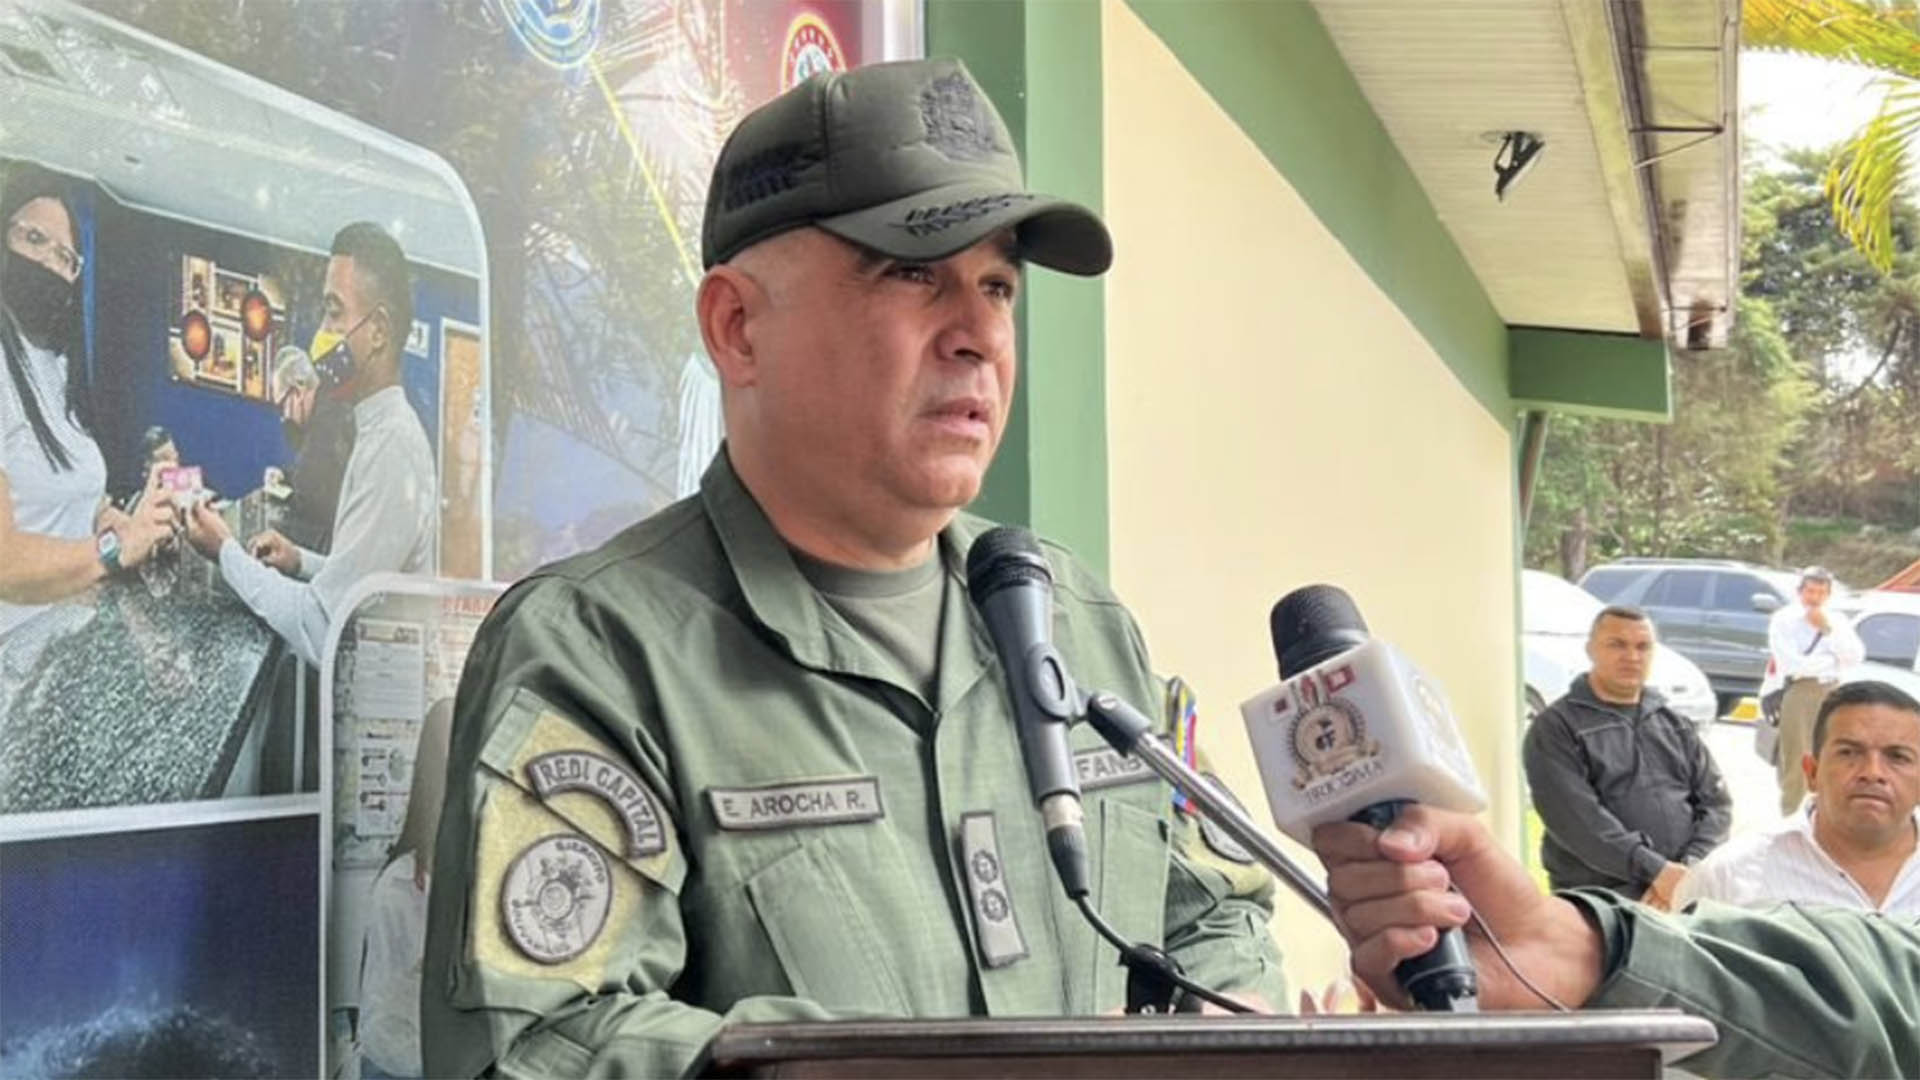 La cruda recriminación de los comandantes venezolanos: “¿Cómo se puede mantener elevada la moral de sus hombres si ellos y su familia están pasando hambre?”